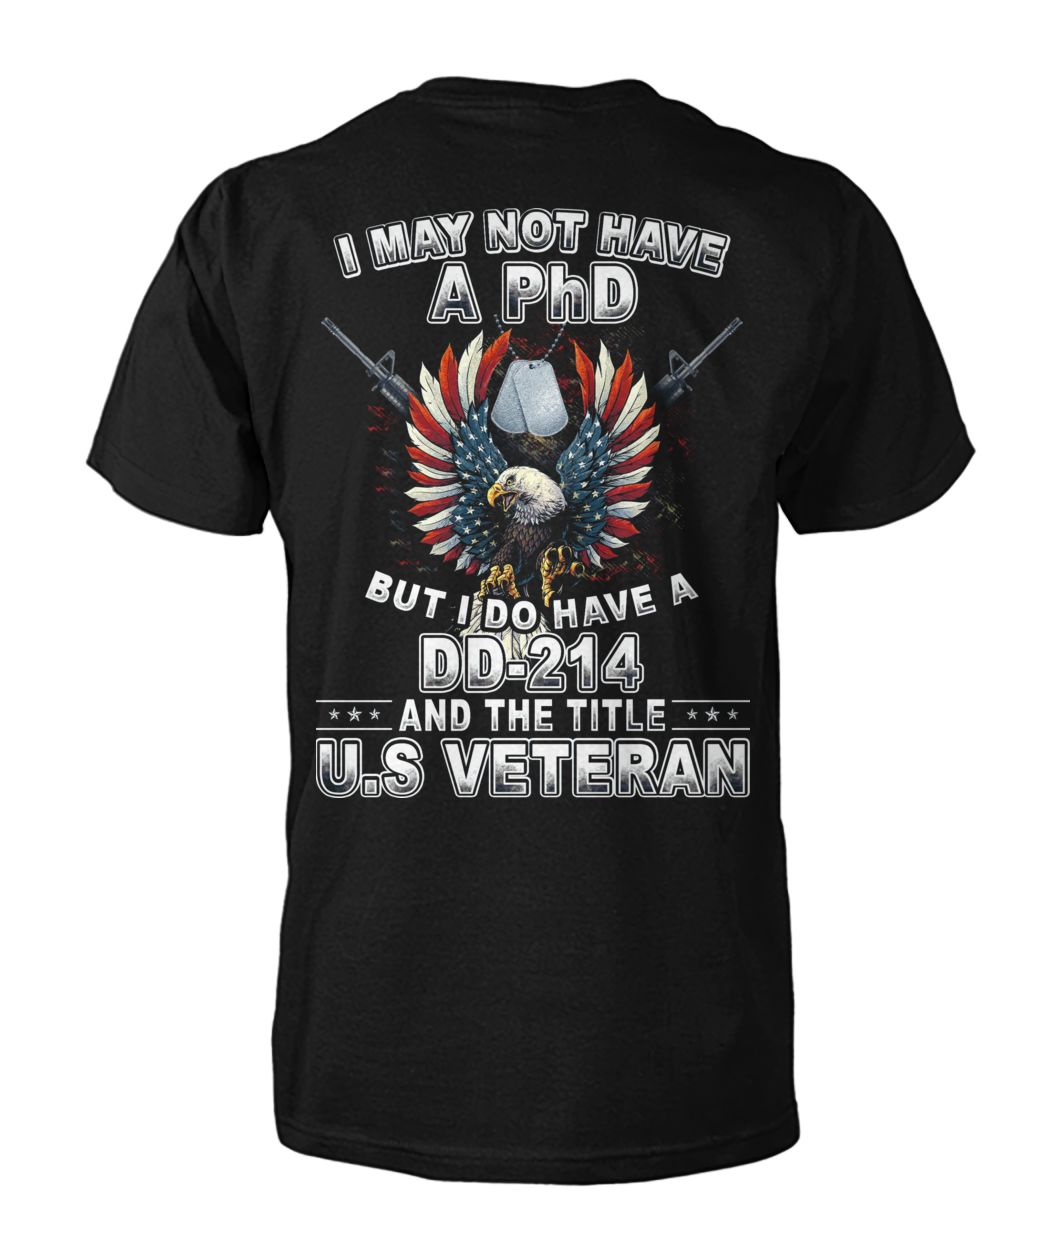 I May Not Have A PhD But I Do Have A DD-214 And The Title U.S Veteran